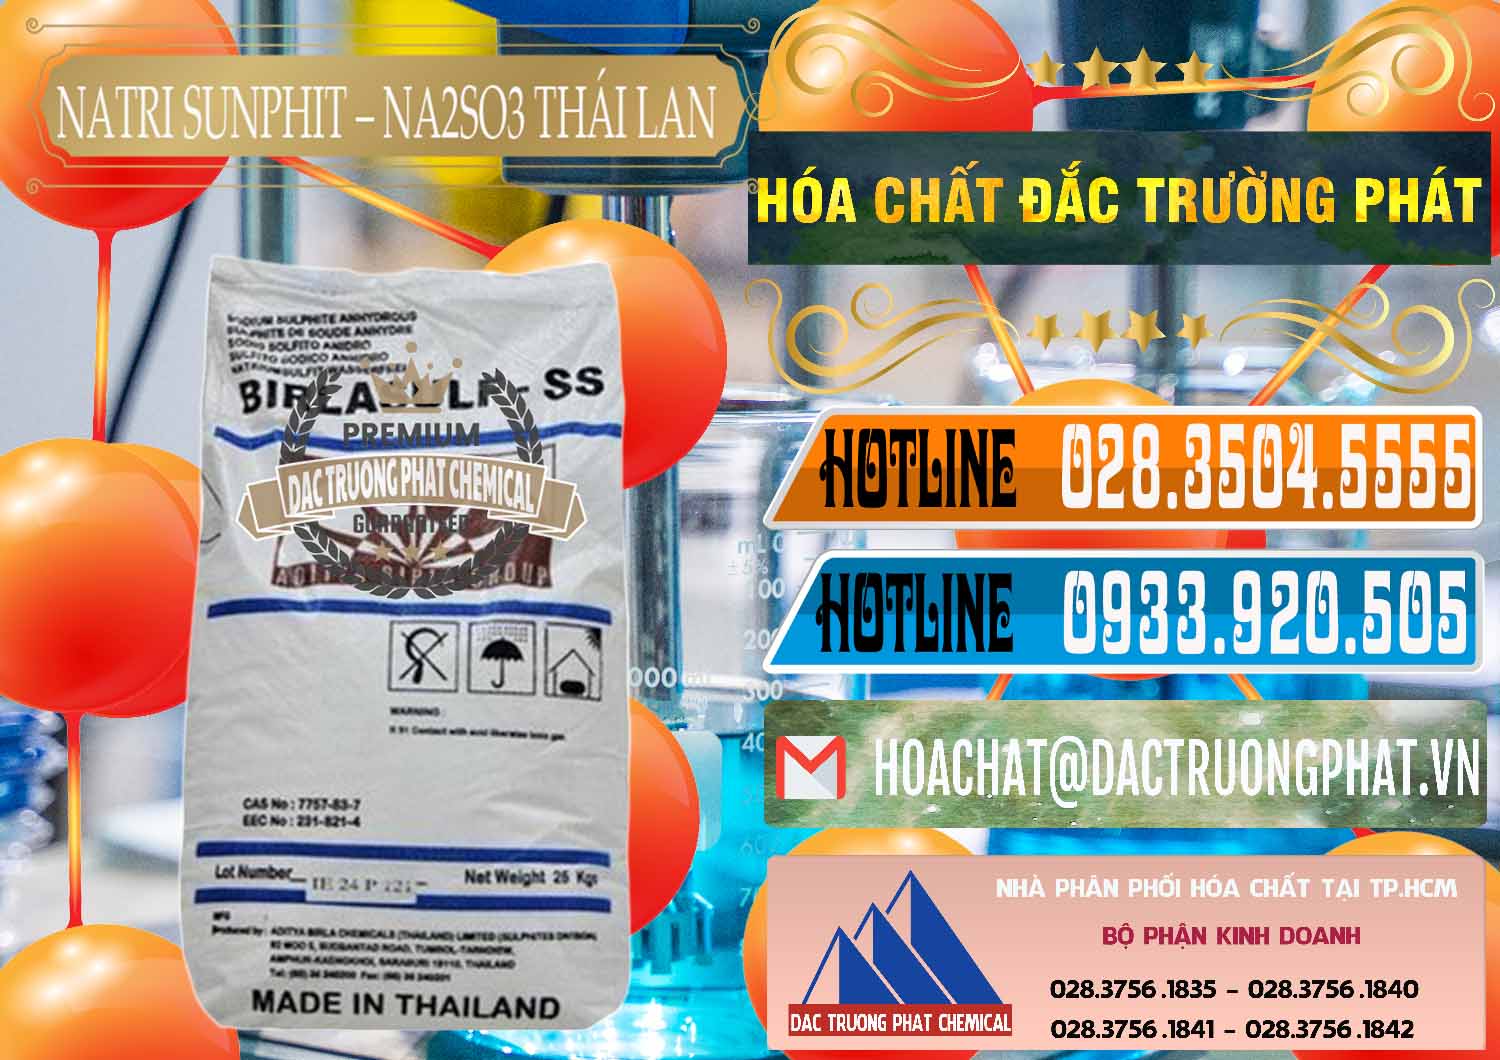 Đơn vị bán - cung cấp Natri Sunphit - NA2SO3 Thái Lan - 0105 - Cty chuyên phân phối & kinh doanh hóa chất tại TP.HCM - stmp.net